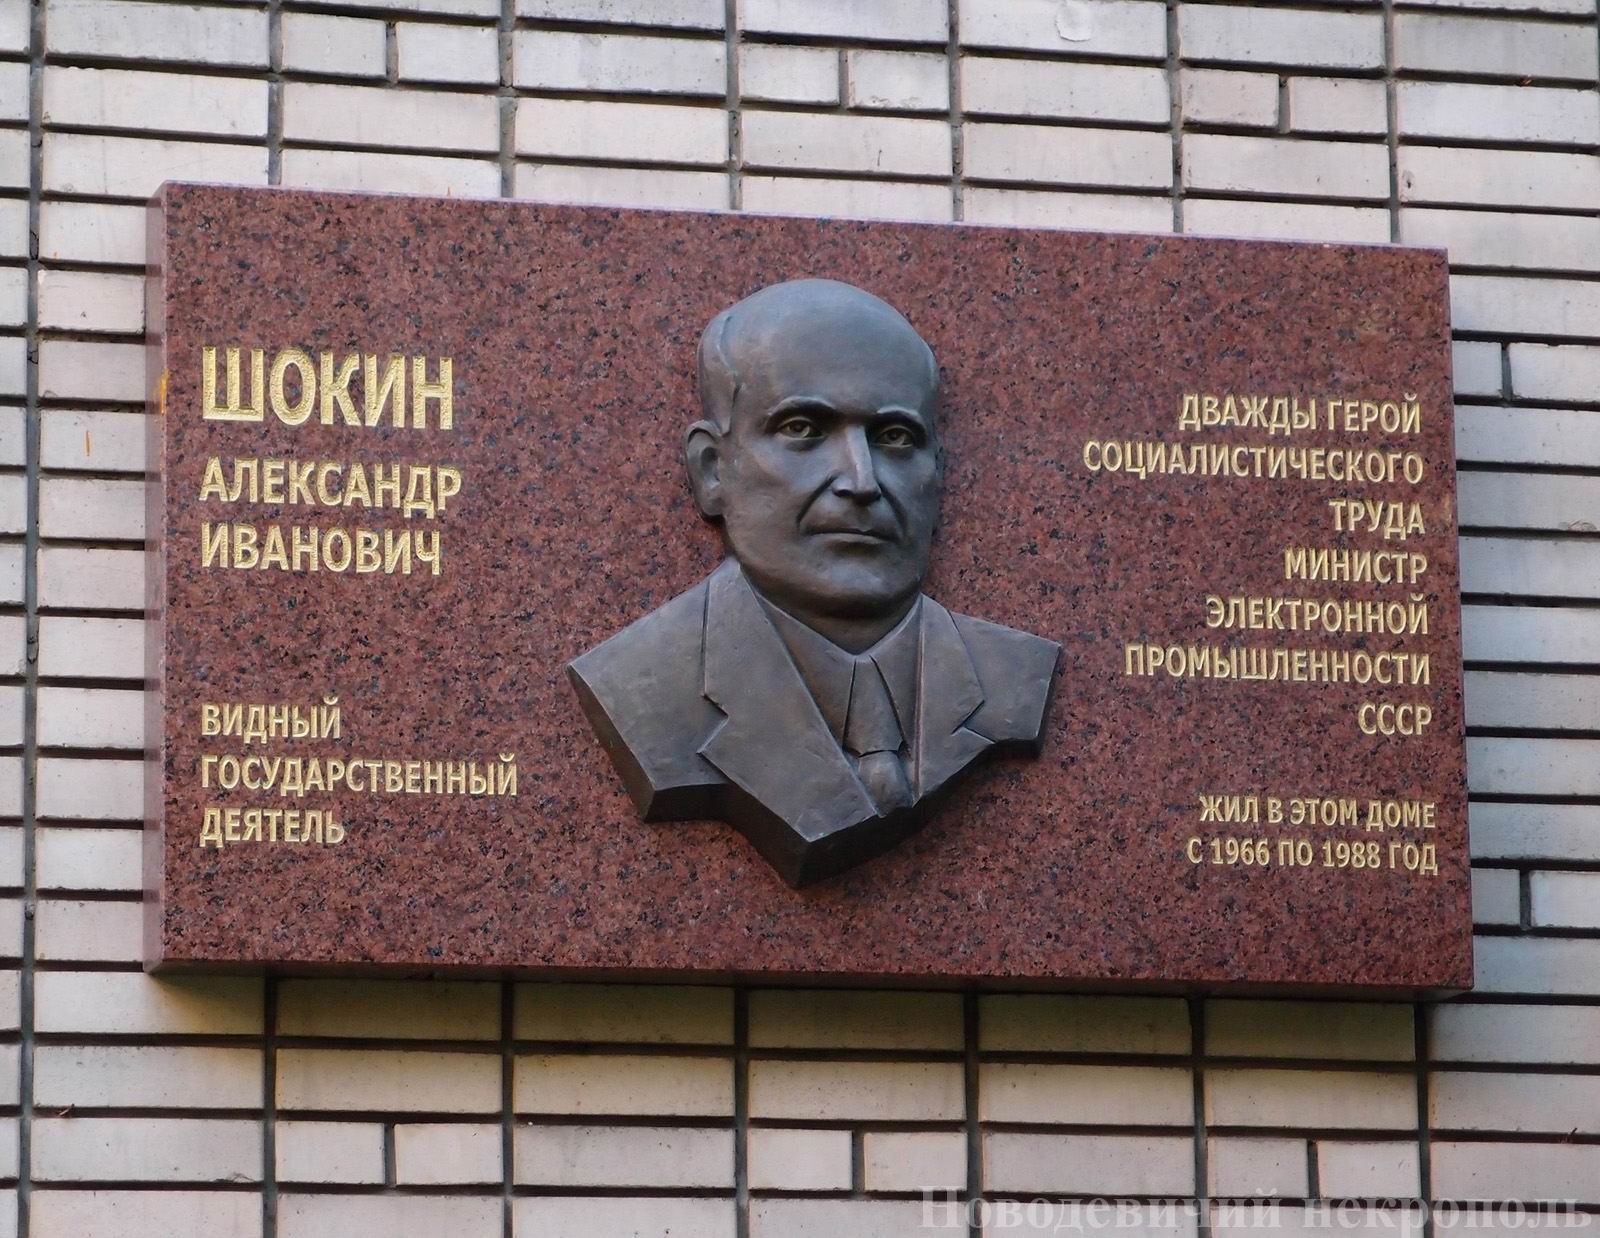 Мемориальная доска Шокину А.И. (1909-1988), ск. Ф.М.Согоян, на улице Спиридоновка, дом 15, открыта 17.3.2011.